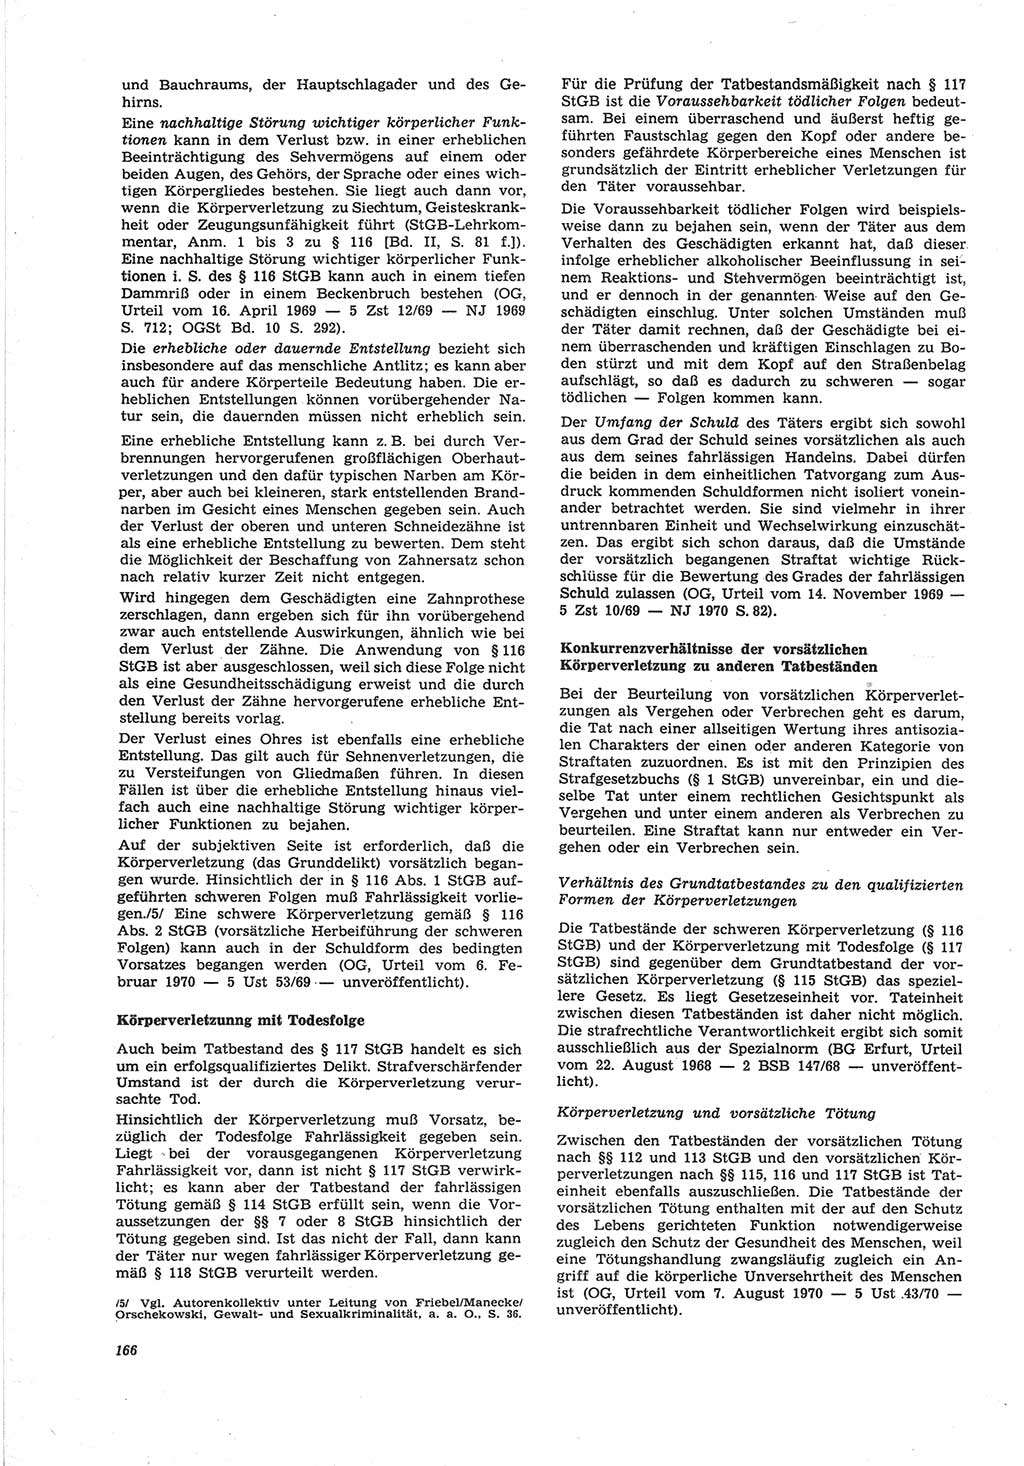 Neue Justiz (NJ), Zeitschrift für Recht und Rechtswissenschaft [Deutsche Demokratische Republik (DDR)], 25. Jahrgang 1971, Seite 166 (NJ DDR 1971, S. 166)